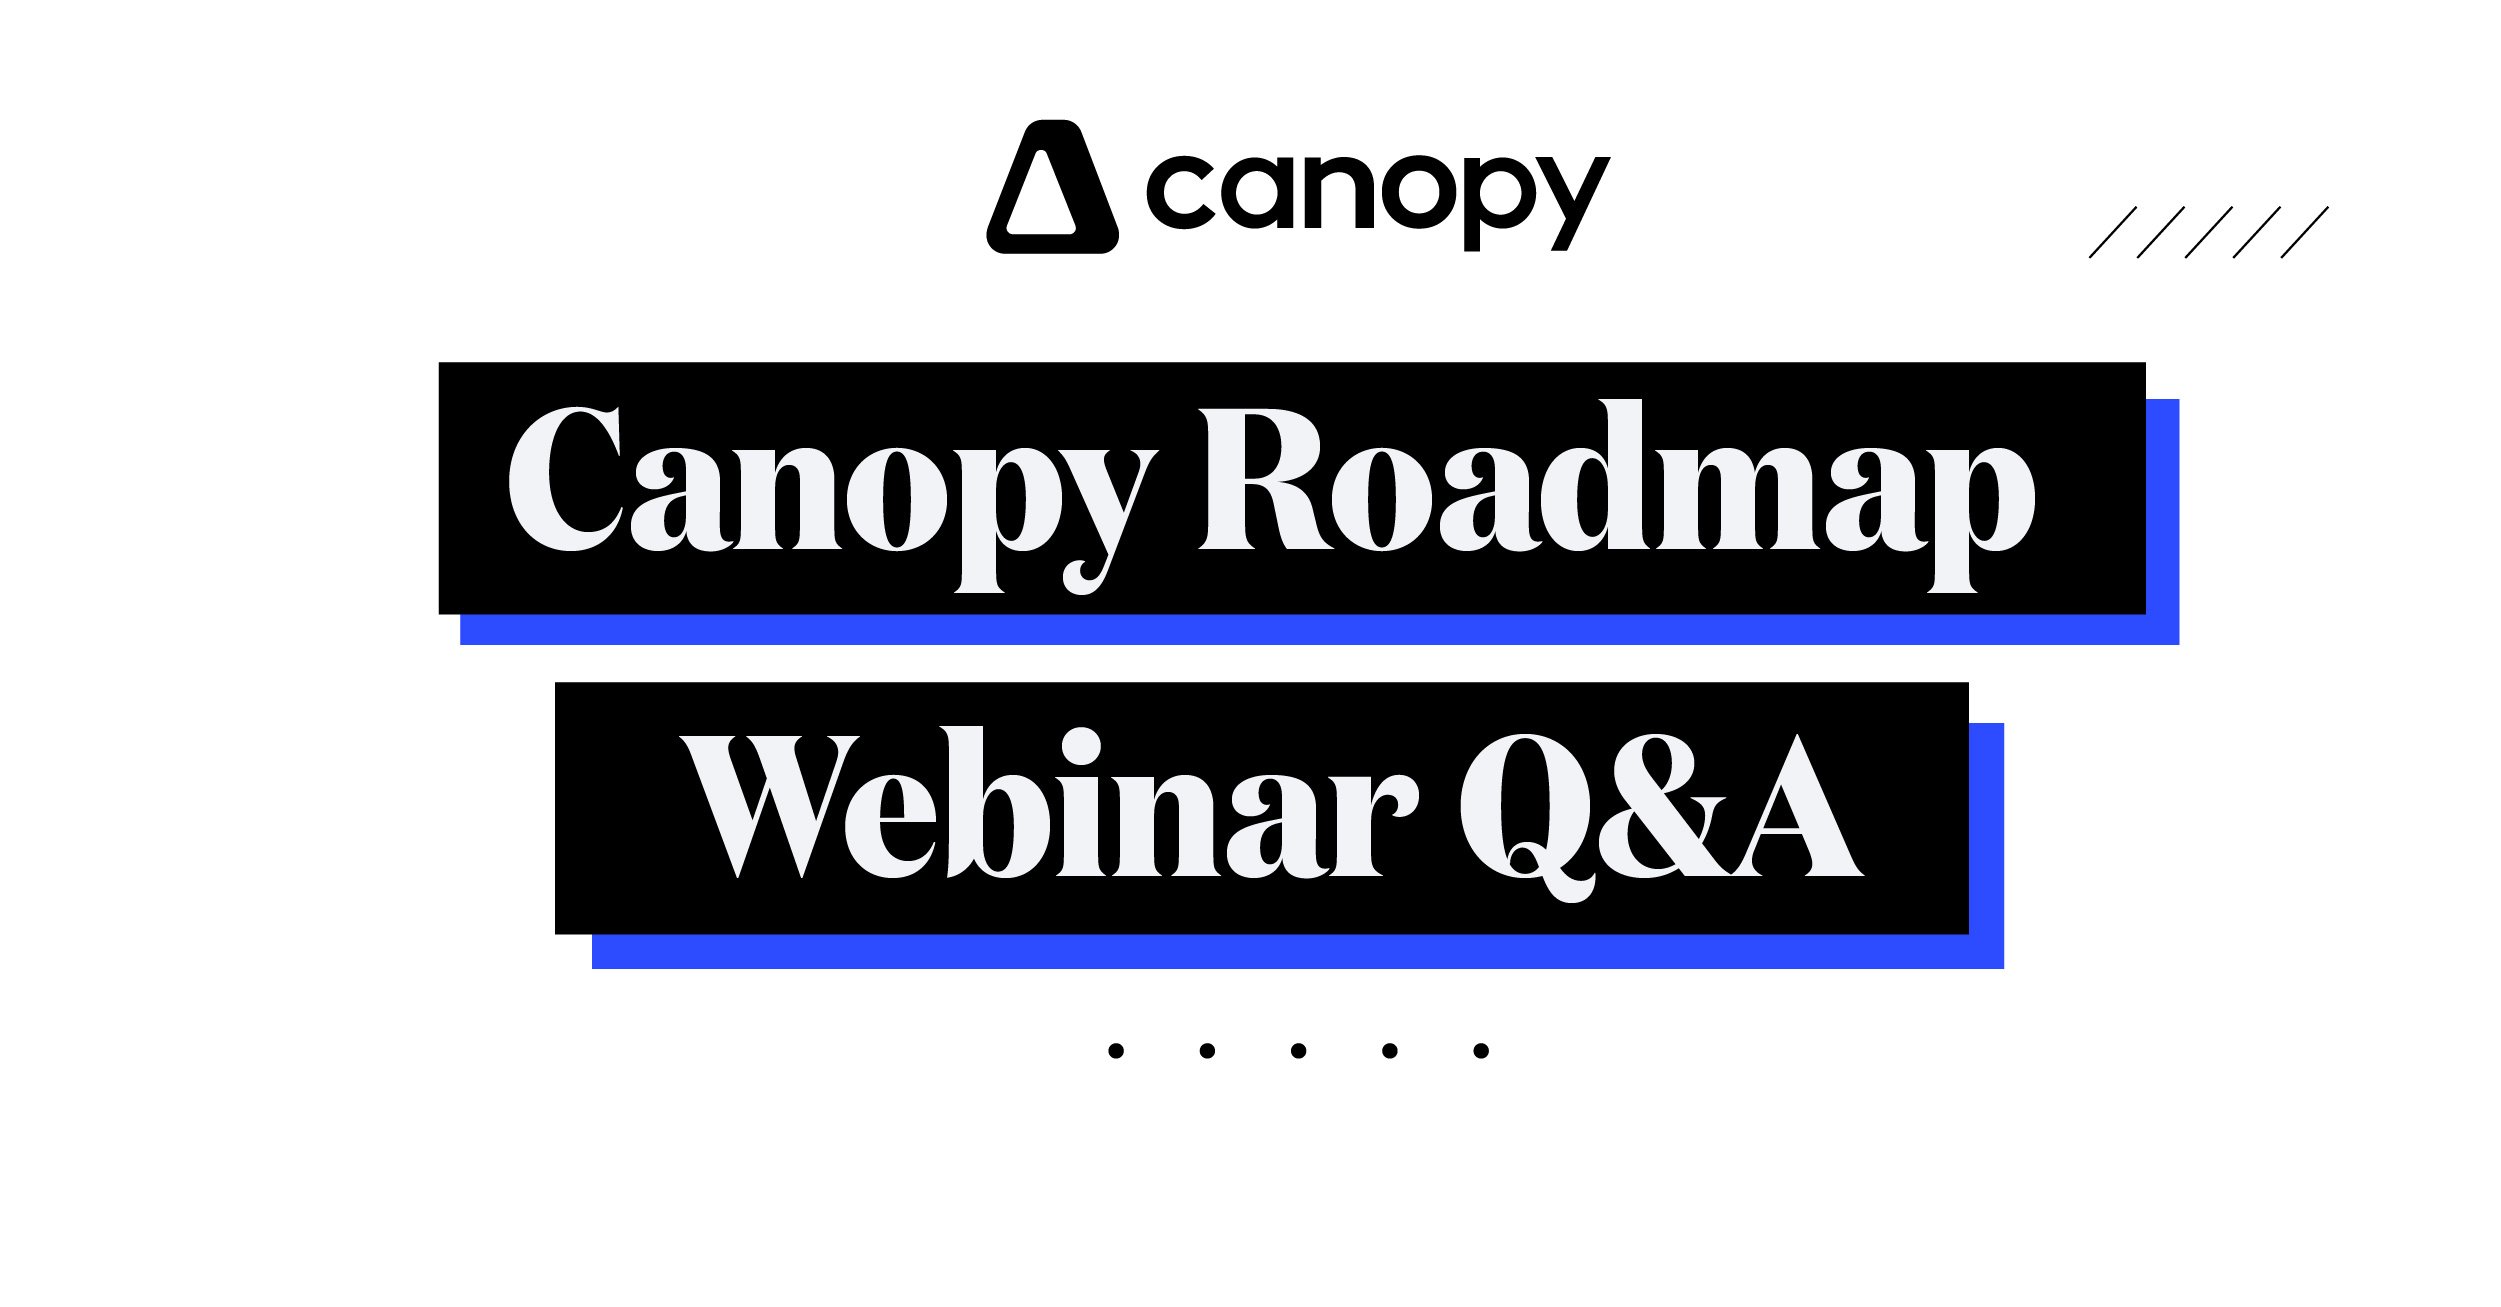 Canopy Roadmap Webinar Q&A